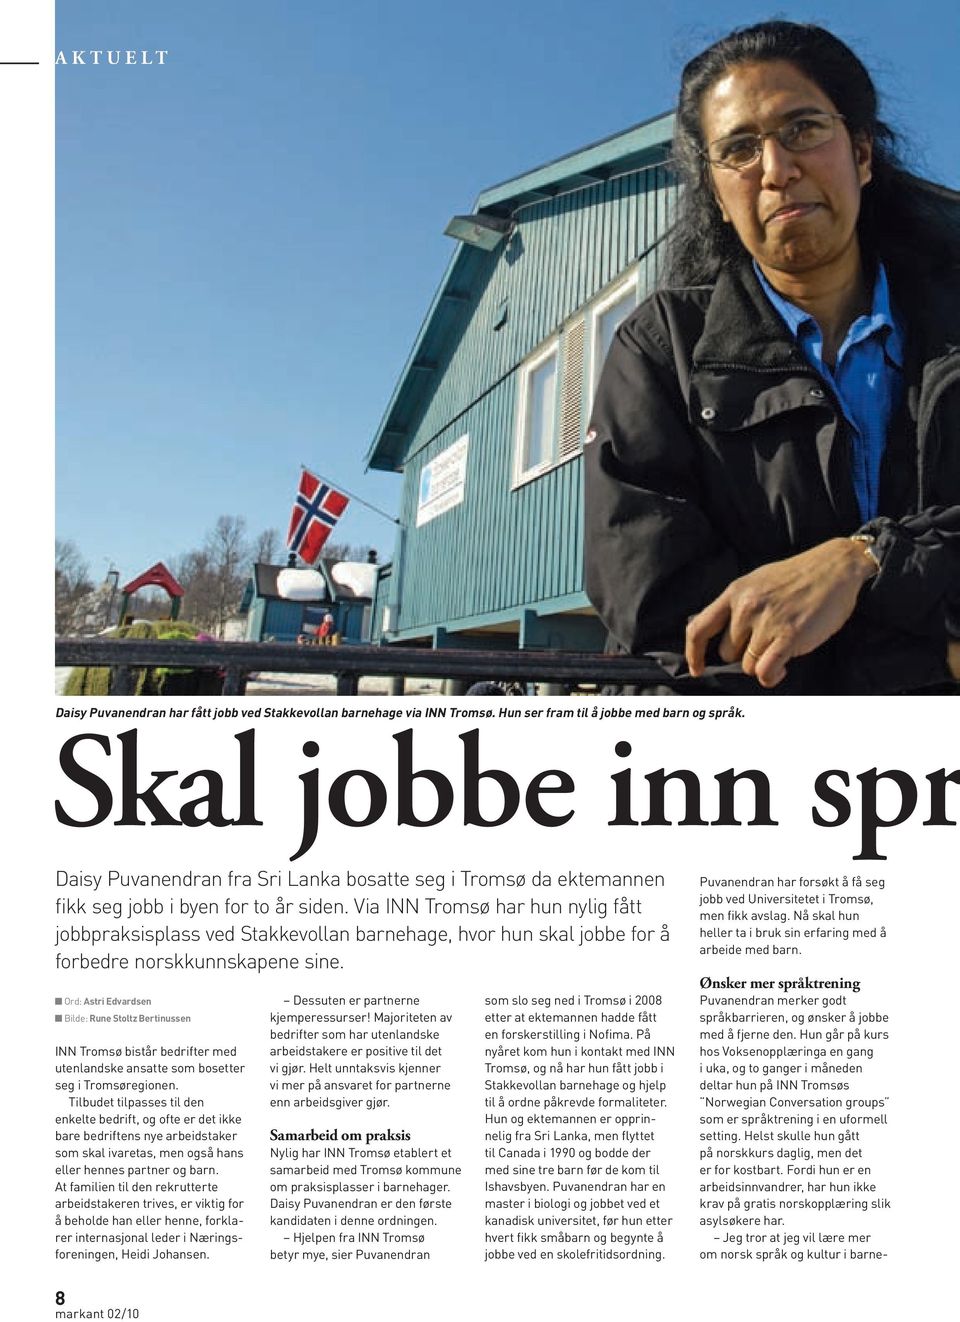 Via INN Tromsø har hun nylig fått jobbpraksisplass ved Stakkevollan barnehage, hvor hun skal jobbe for å forbedre norskkunnskapene sine.